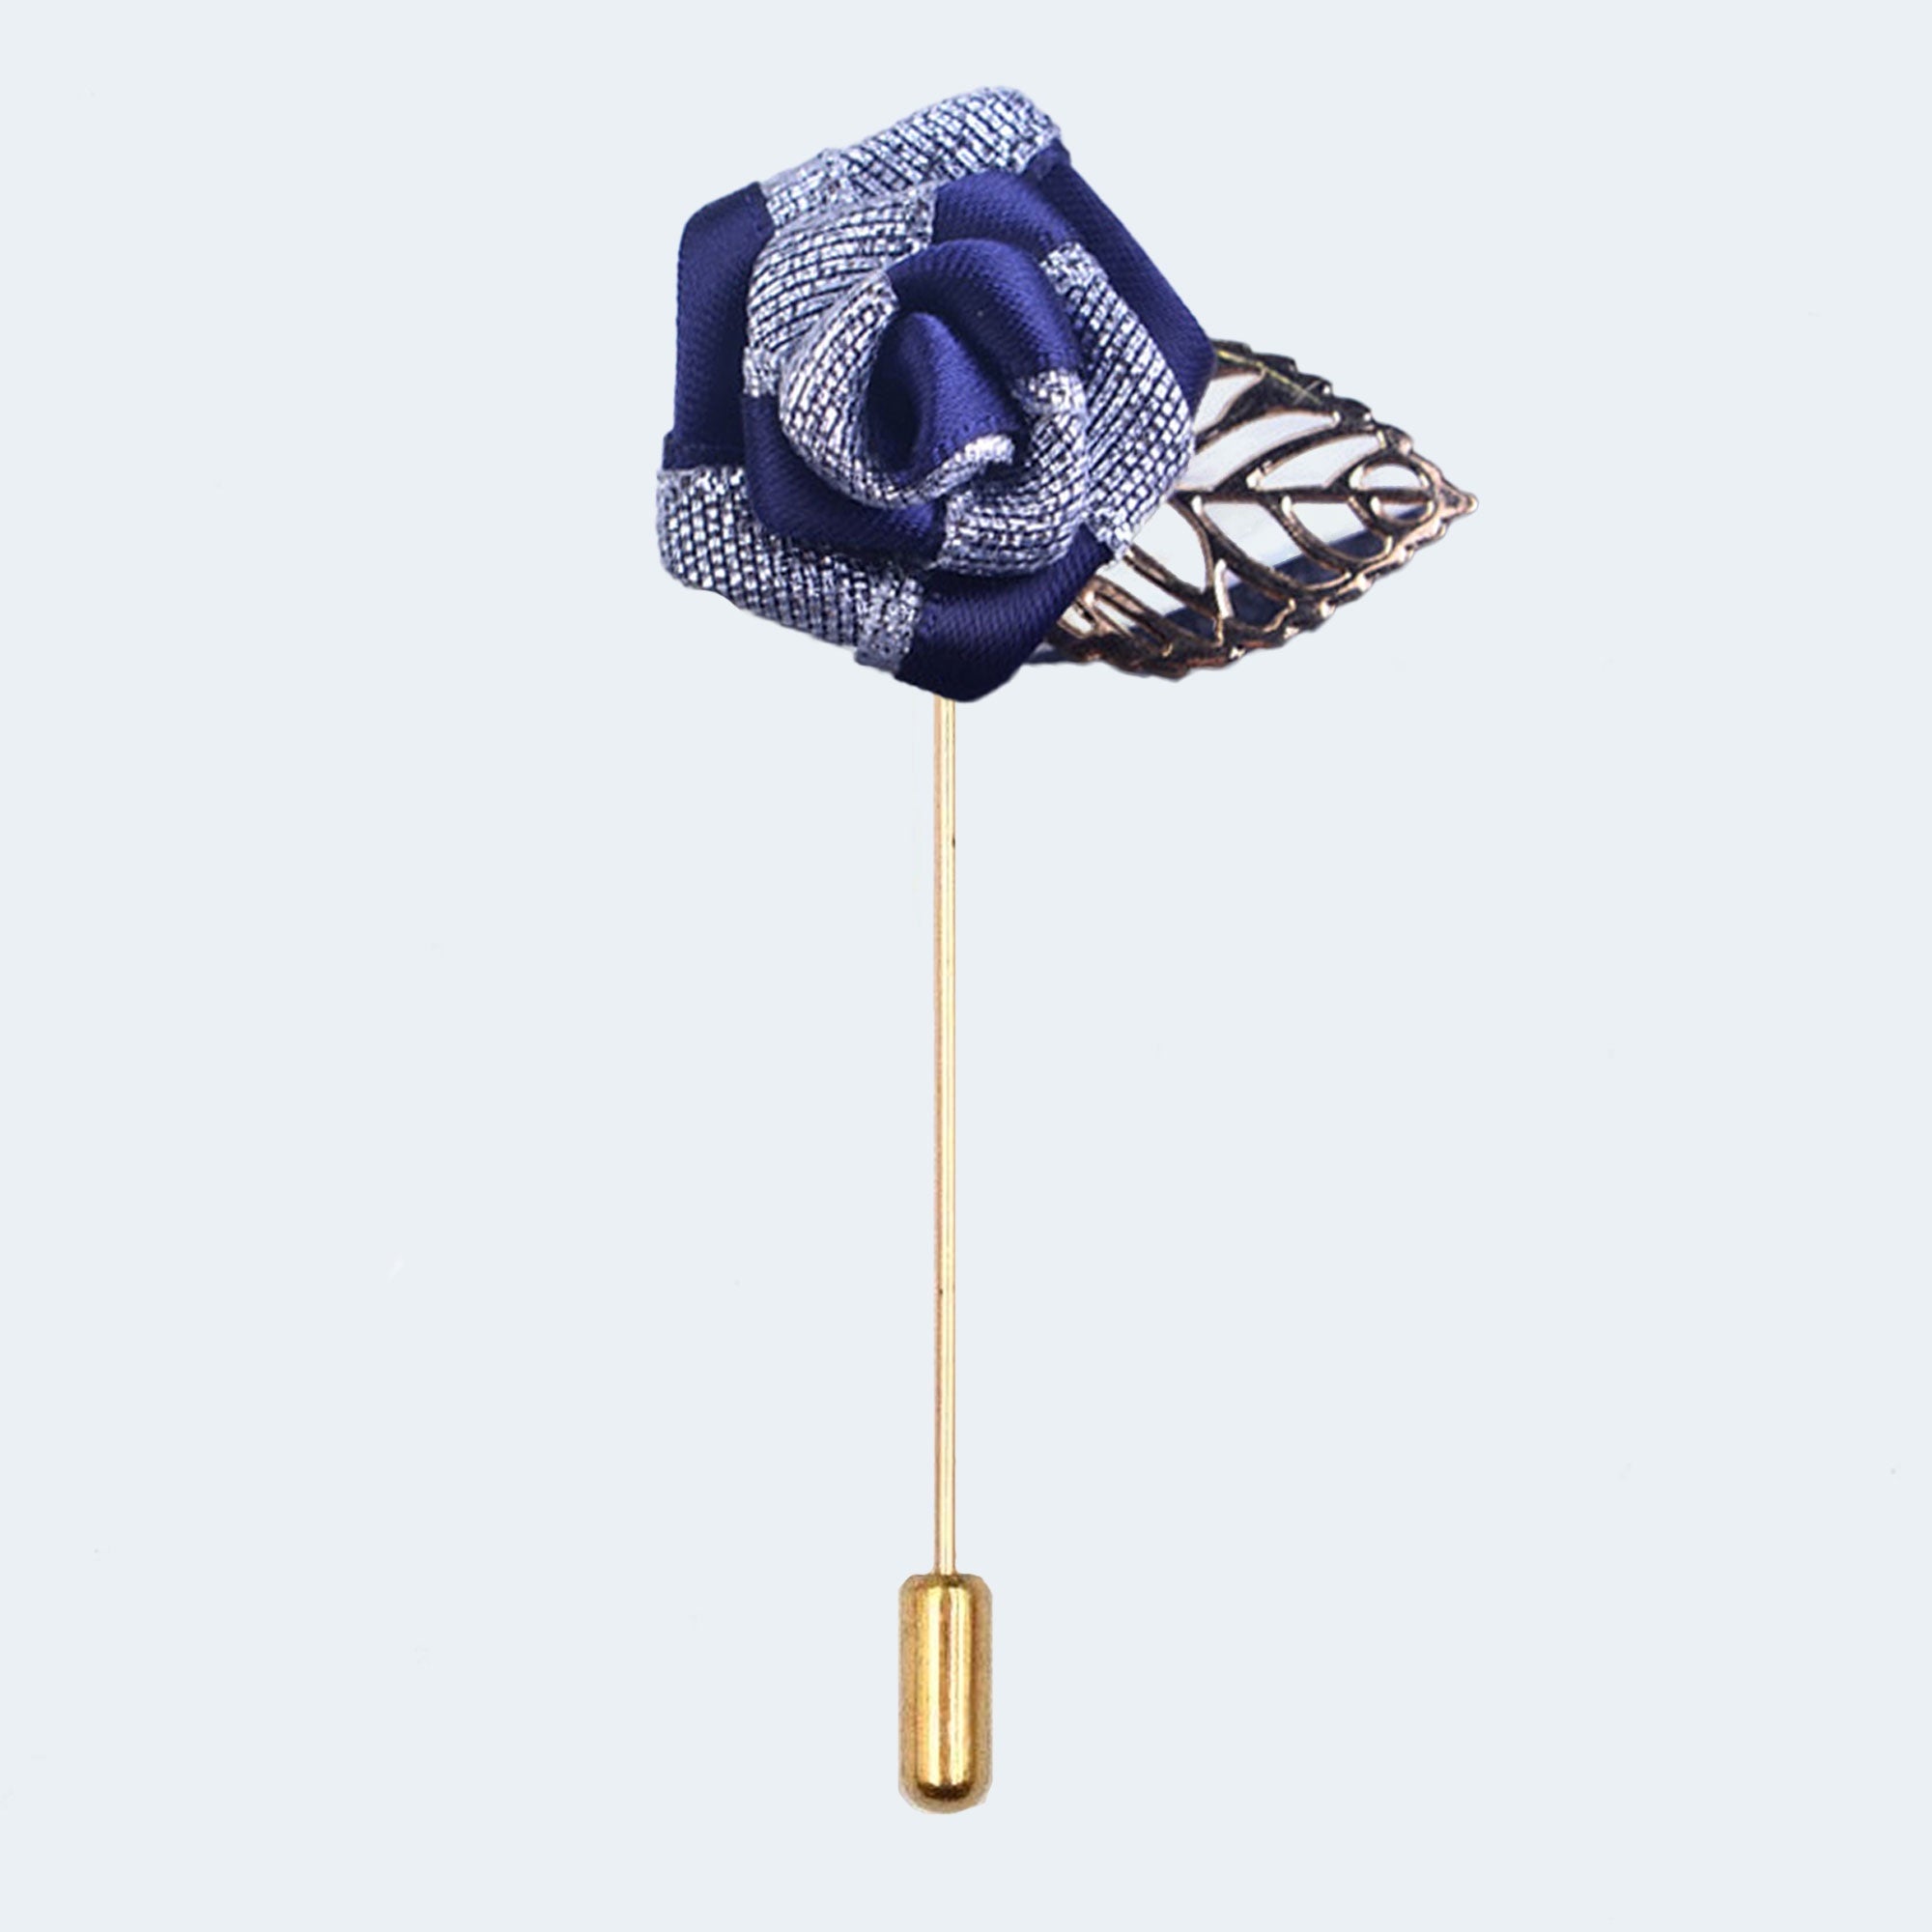 Blue Floral Lapel Pin